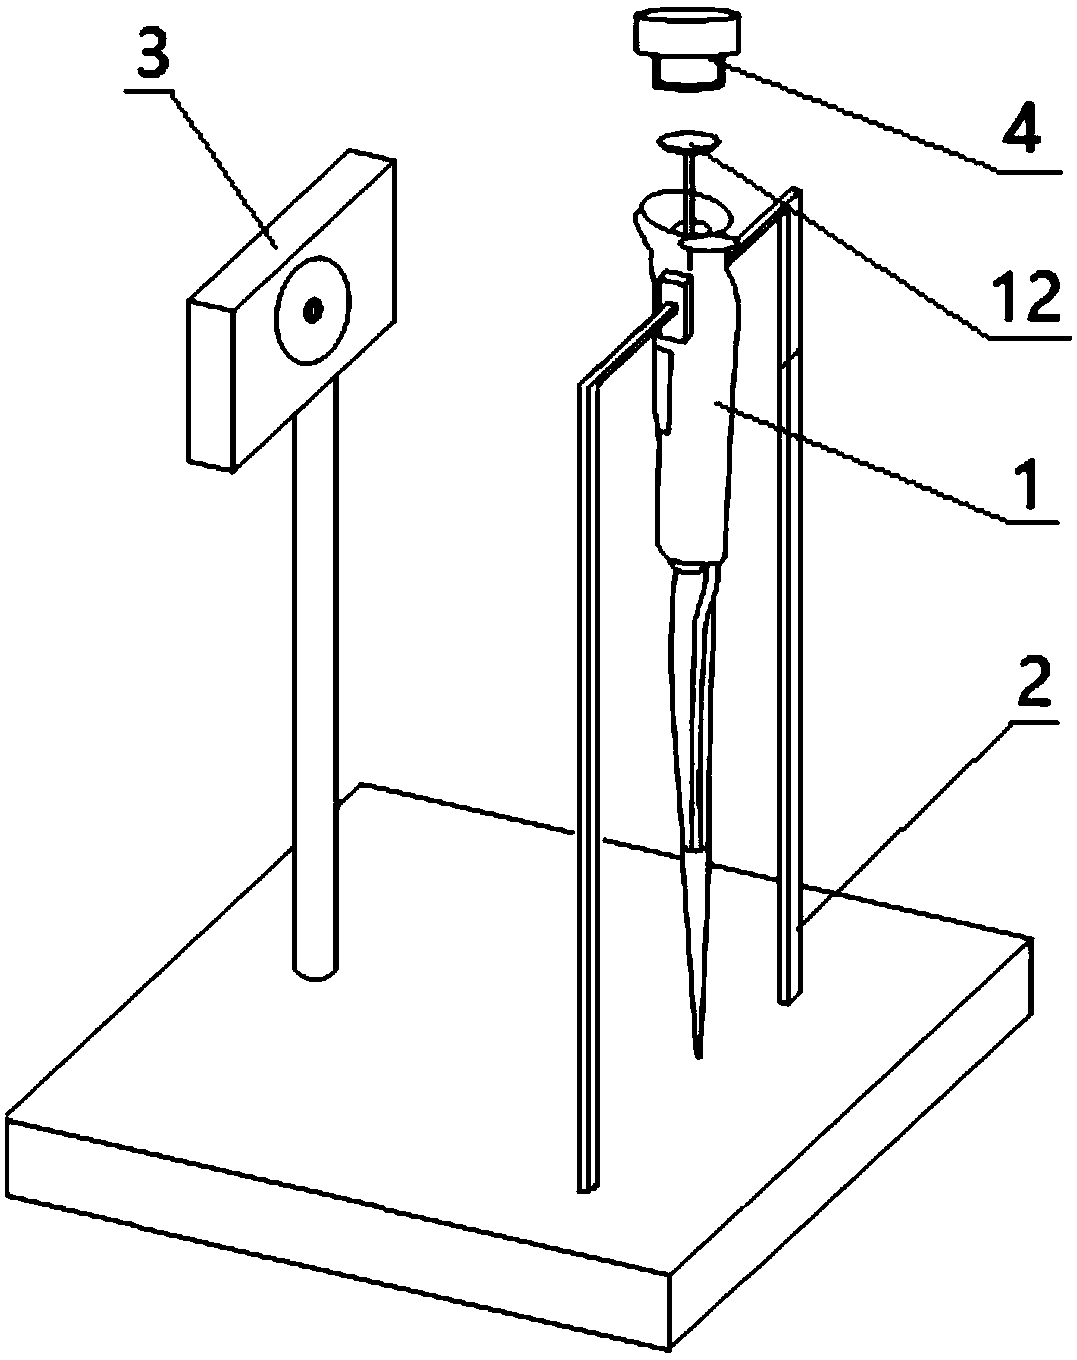 Adjusting method of range of pipette and adjusting device